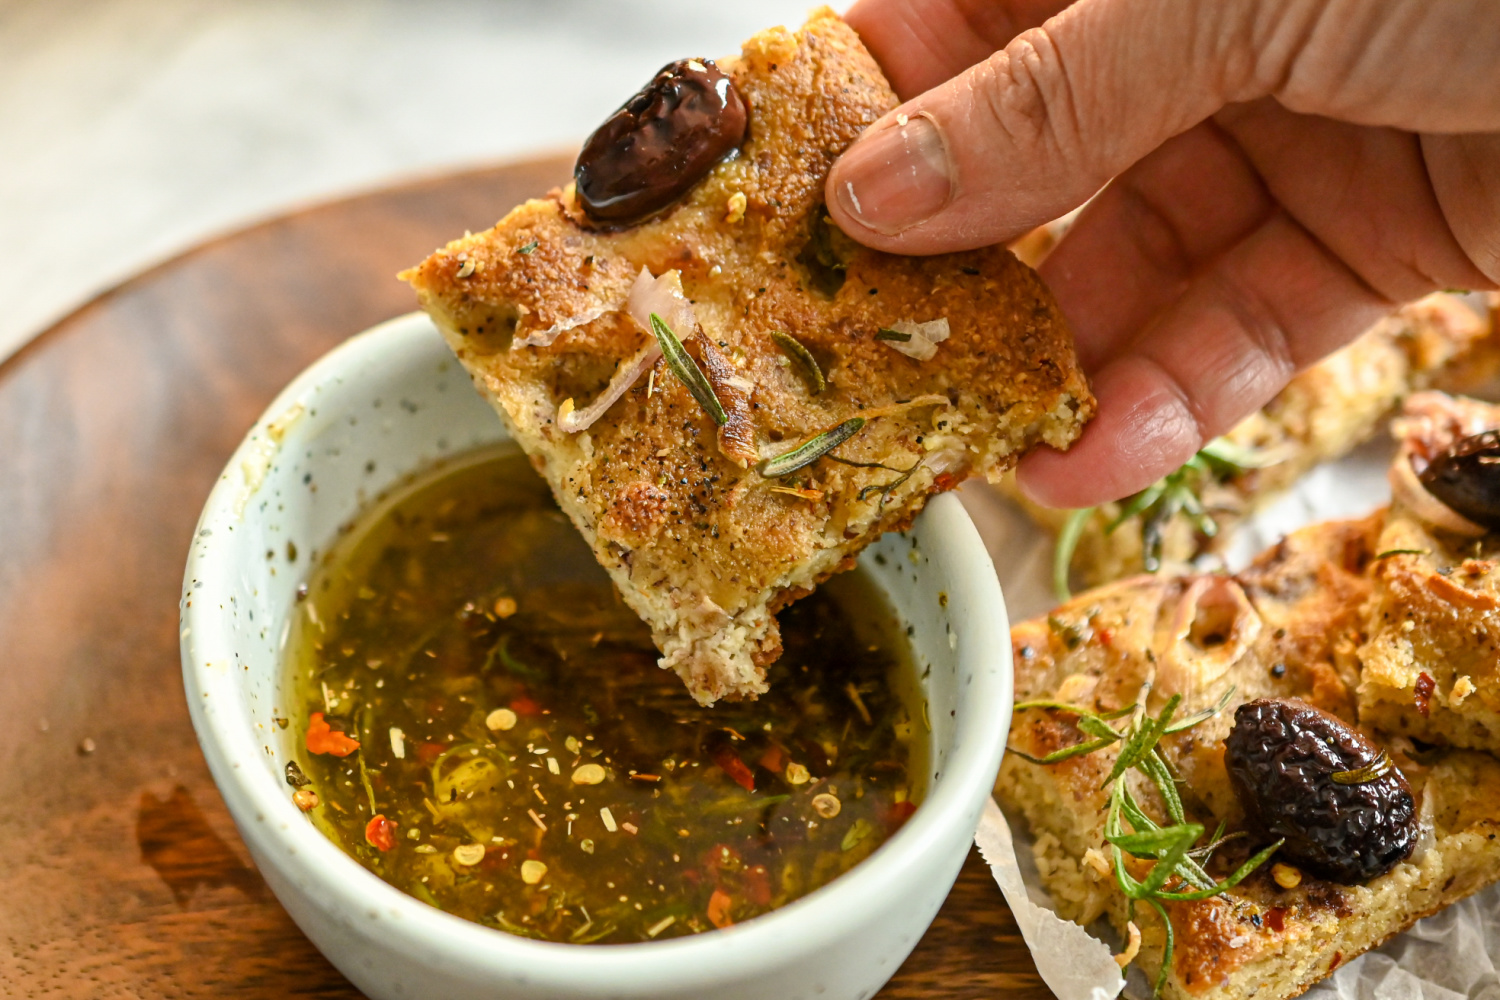 keto focaccia being dipped in seasoned olive oil dip